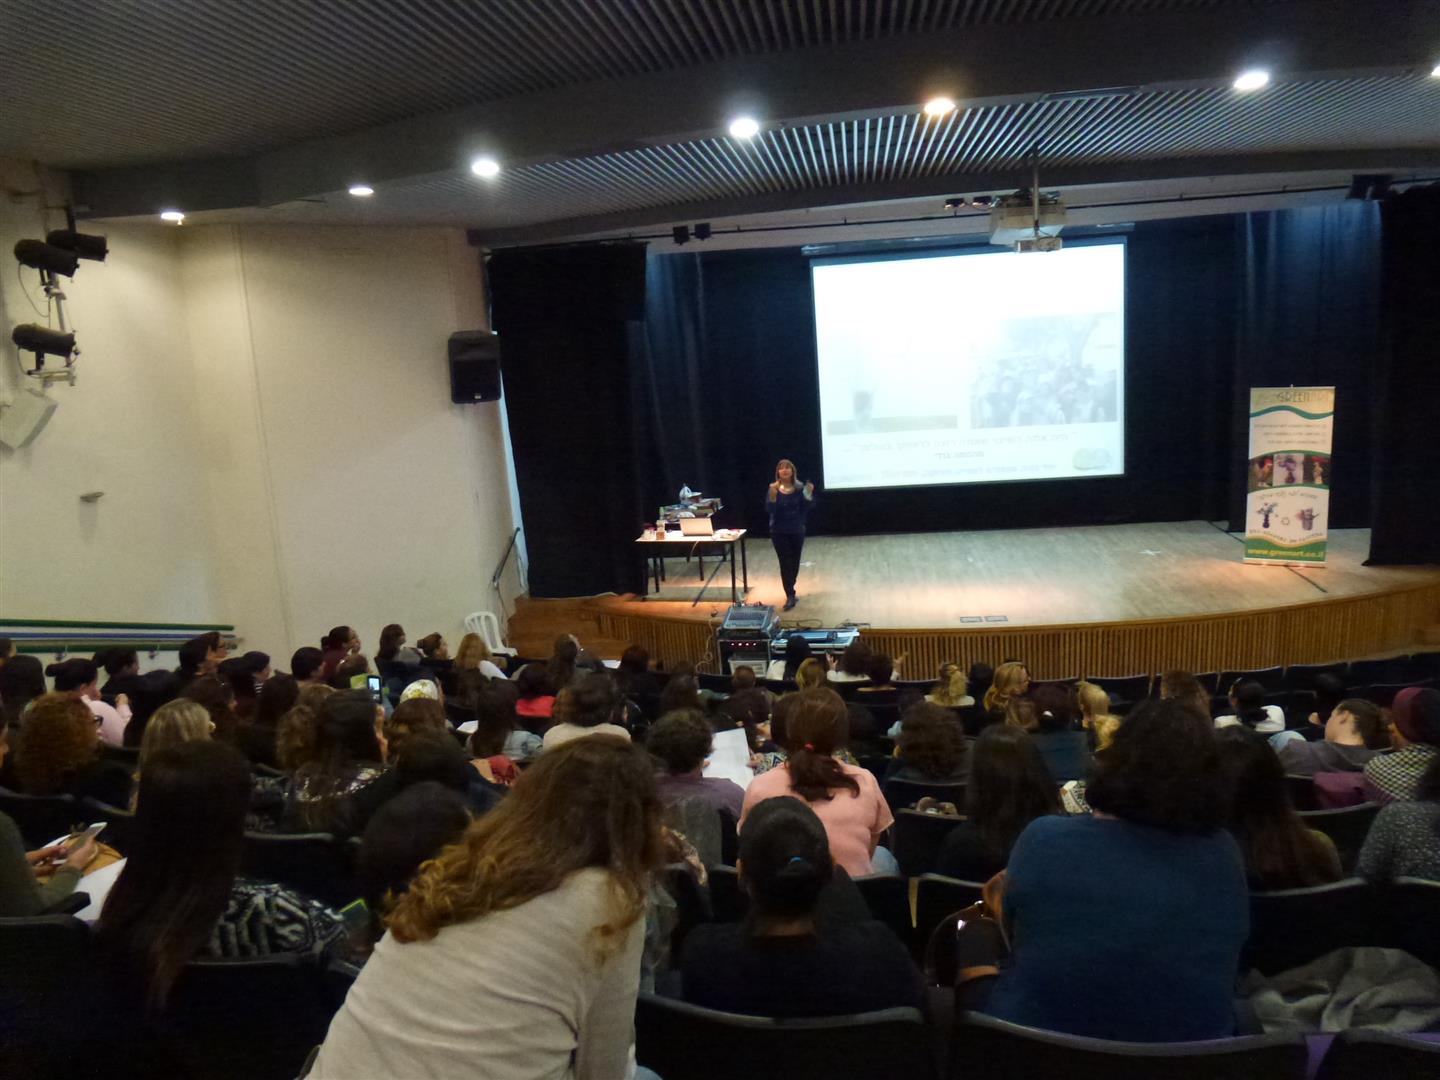 הרצאה לגננות מועצה אזורית גזר ומועצה באר יעקב- חינוך סביבתי לסגלי החינוך